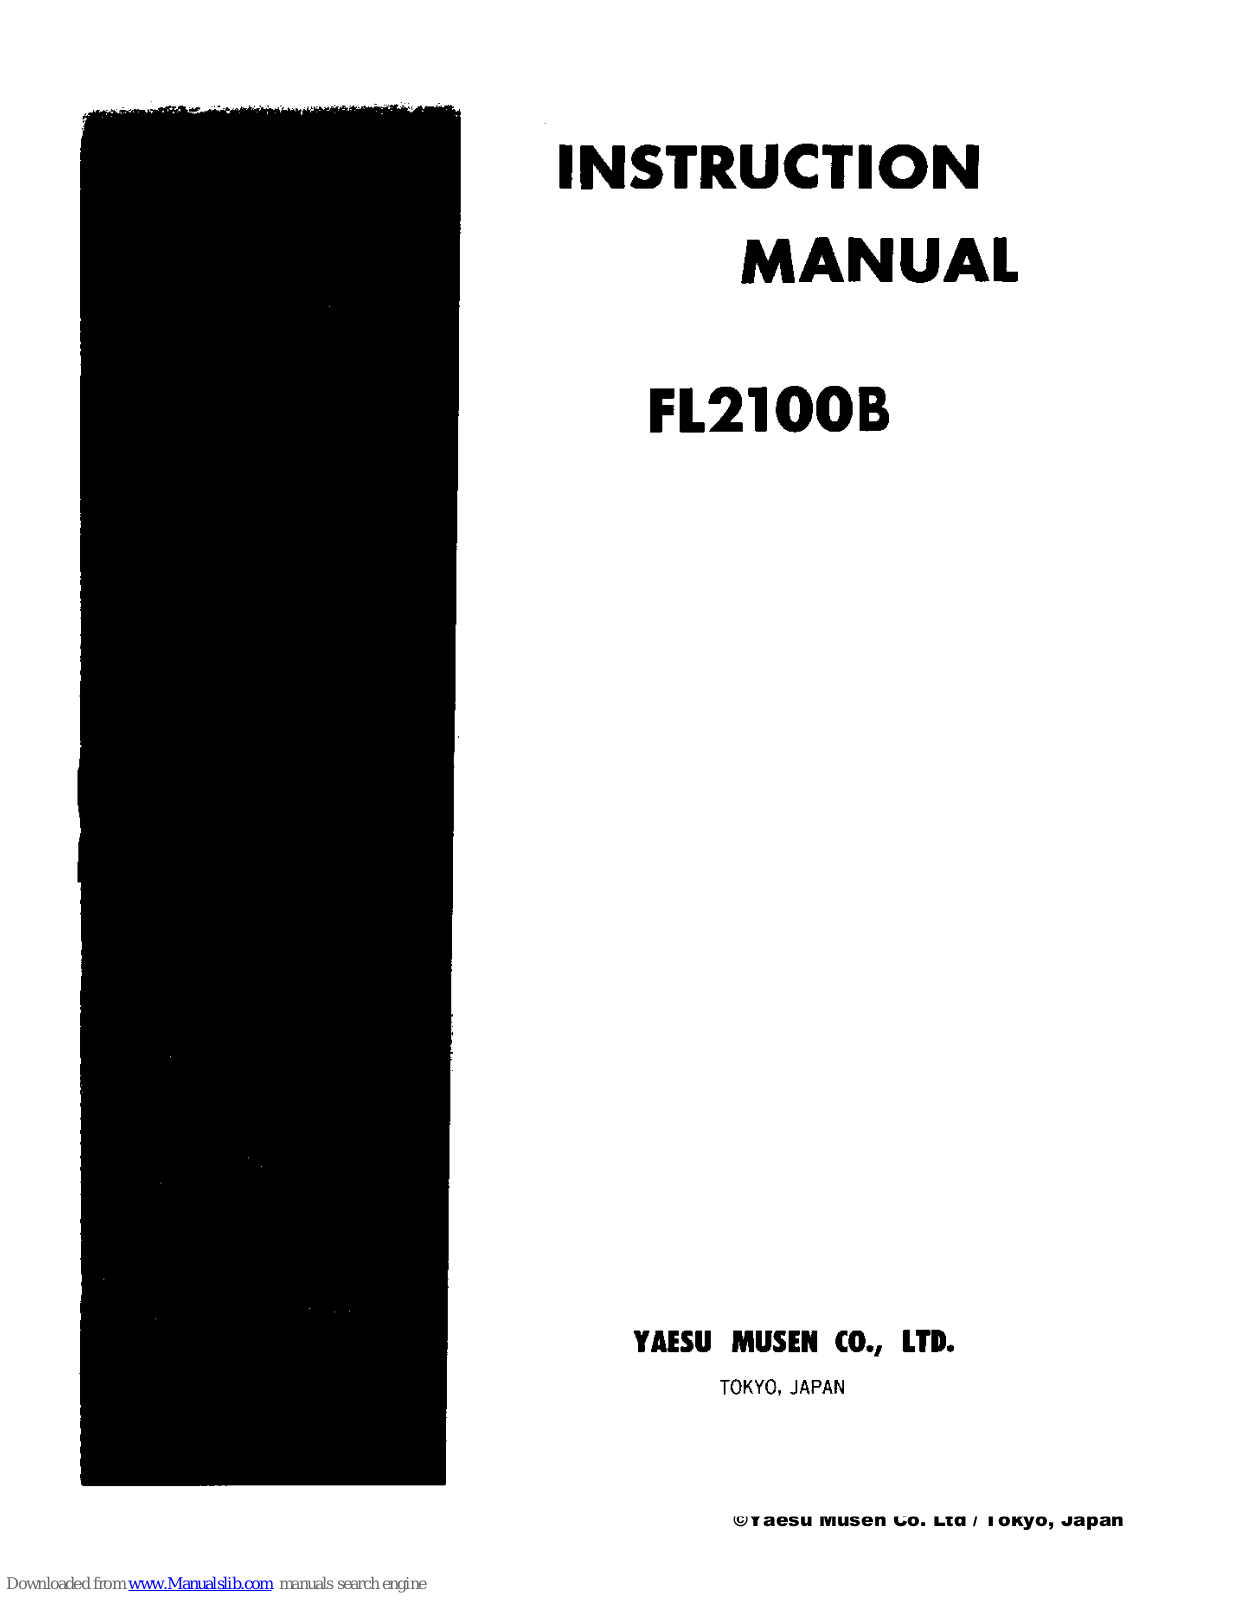 Yaesu FL2100B Instruction Manual